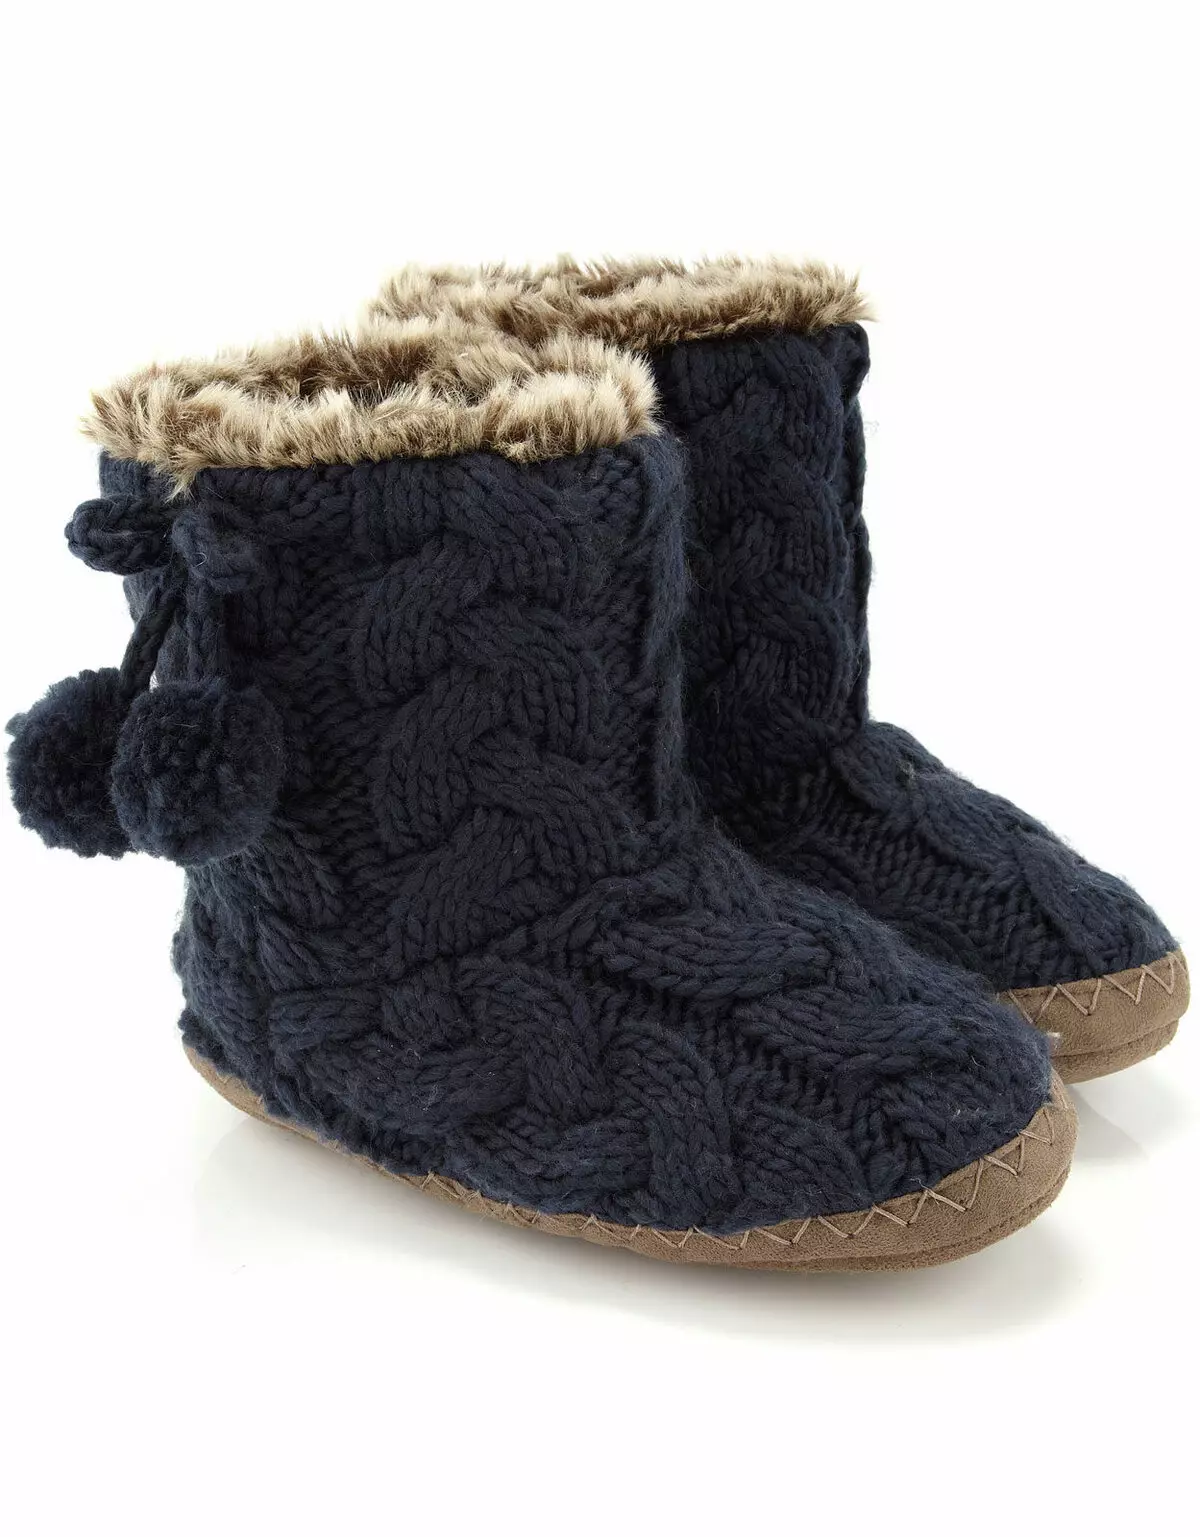 Knitted Slippers (72 sary): modely ho an'ny ankizy sy ny vehivavy amin'ny slippers tokana sy tsotra ary sneakers, japoney, avy amin'ny kianja 14259_48